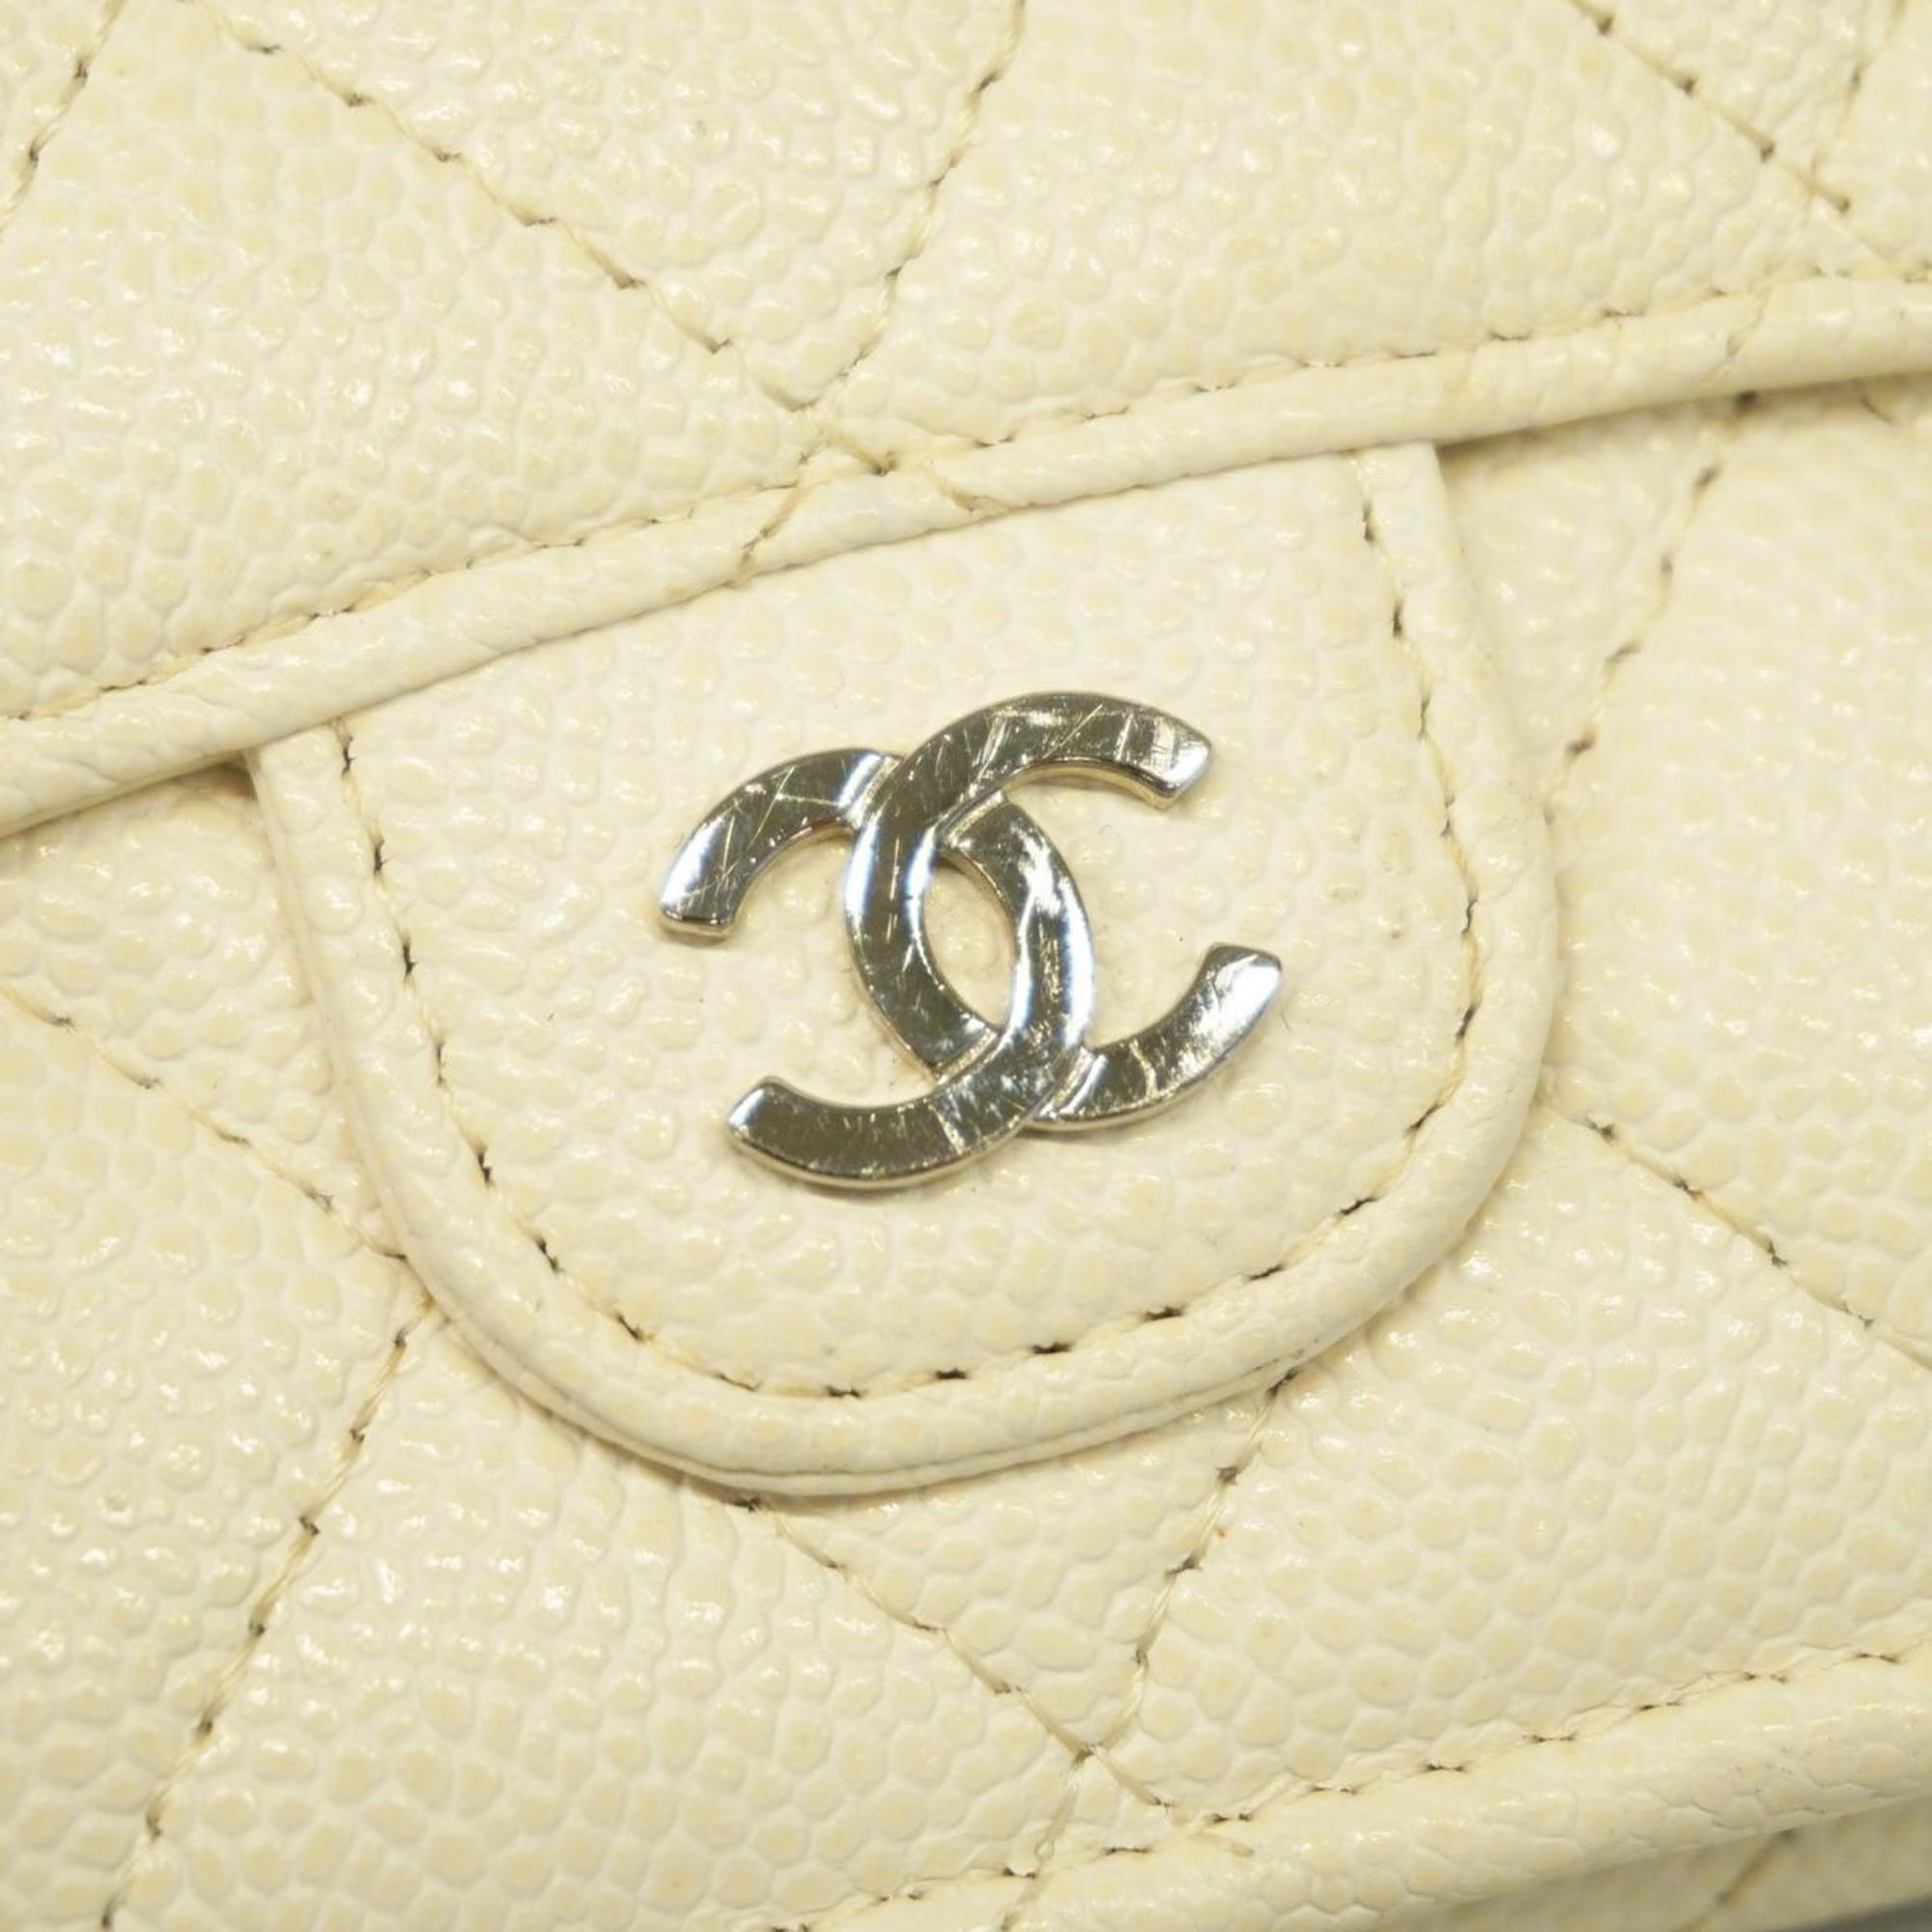 Chanel Tri-fold Wallet Matelasse Caviar Skin White Women's